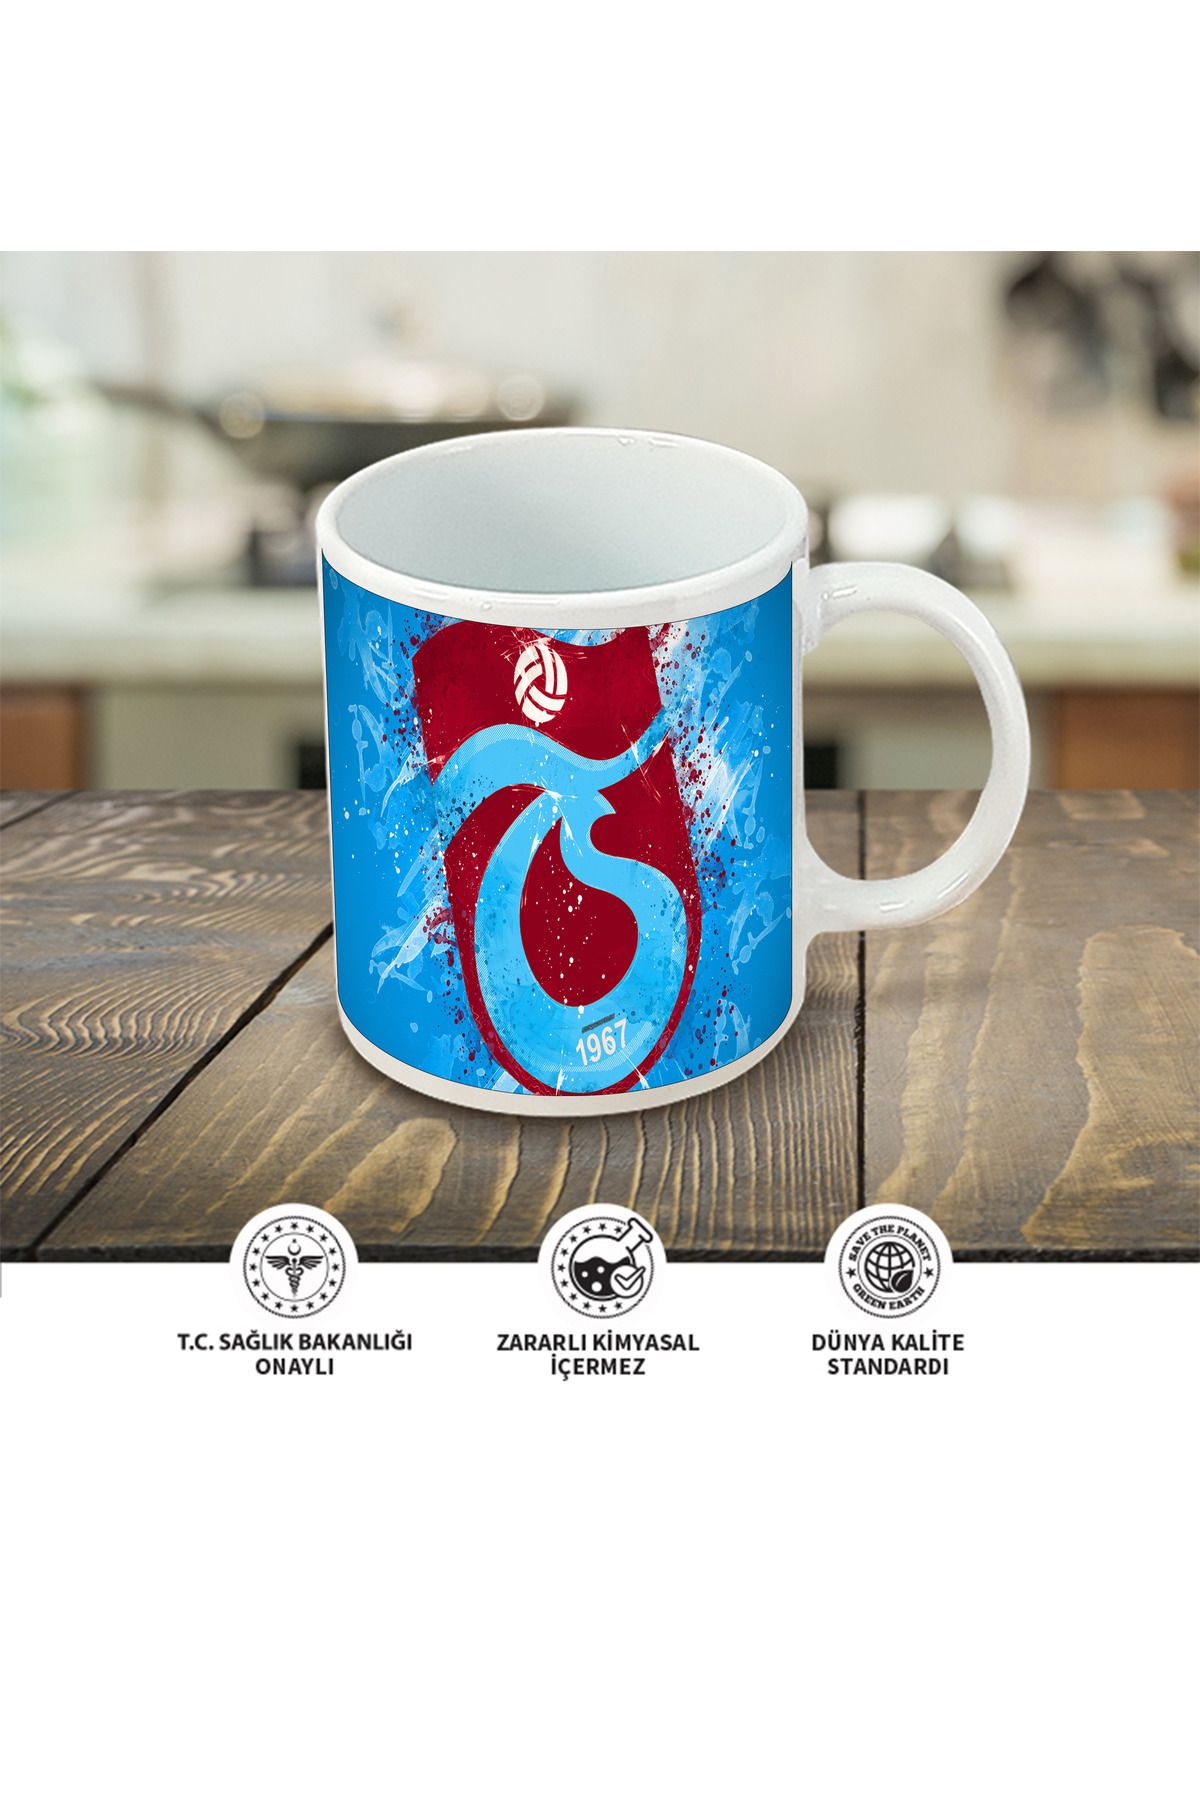 Atölyehane Trabzonspor tasarımlı içi ve kulbu renkli porselen kupa bardak